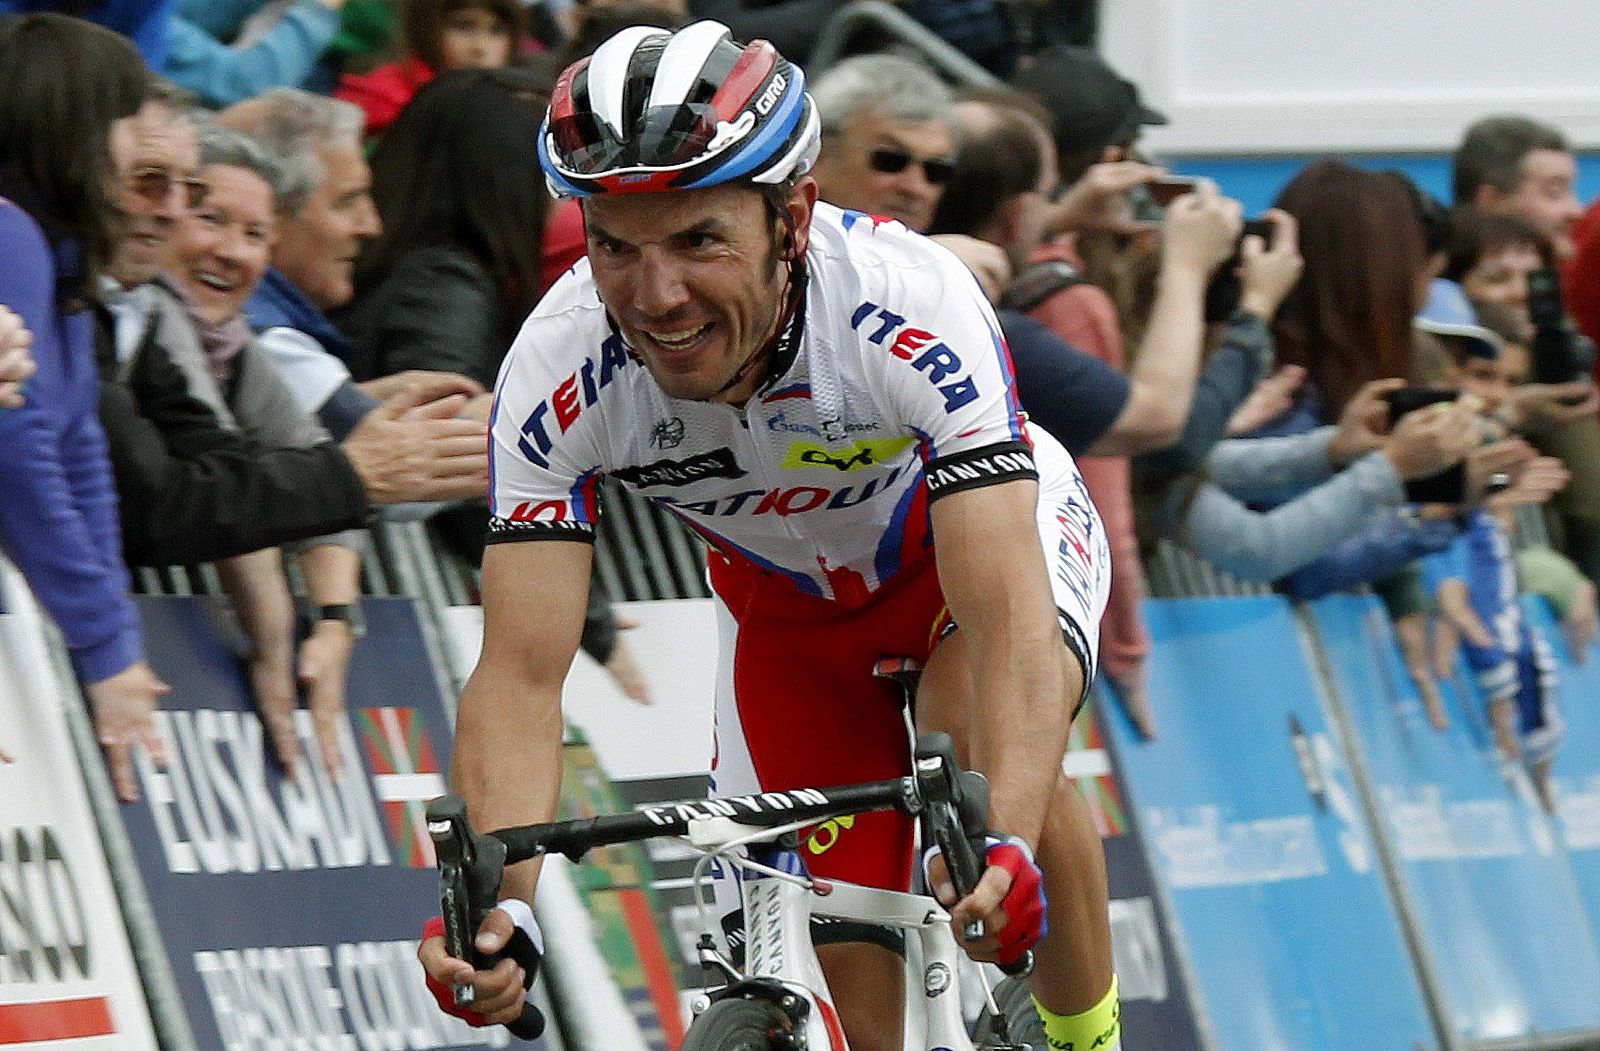 Imagen de archivo del ciclista catalán Joaquim 'Purito' Rodríguez (Katusha) durante la 55 edición de la Vuelta al País Vasco.